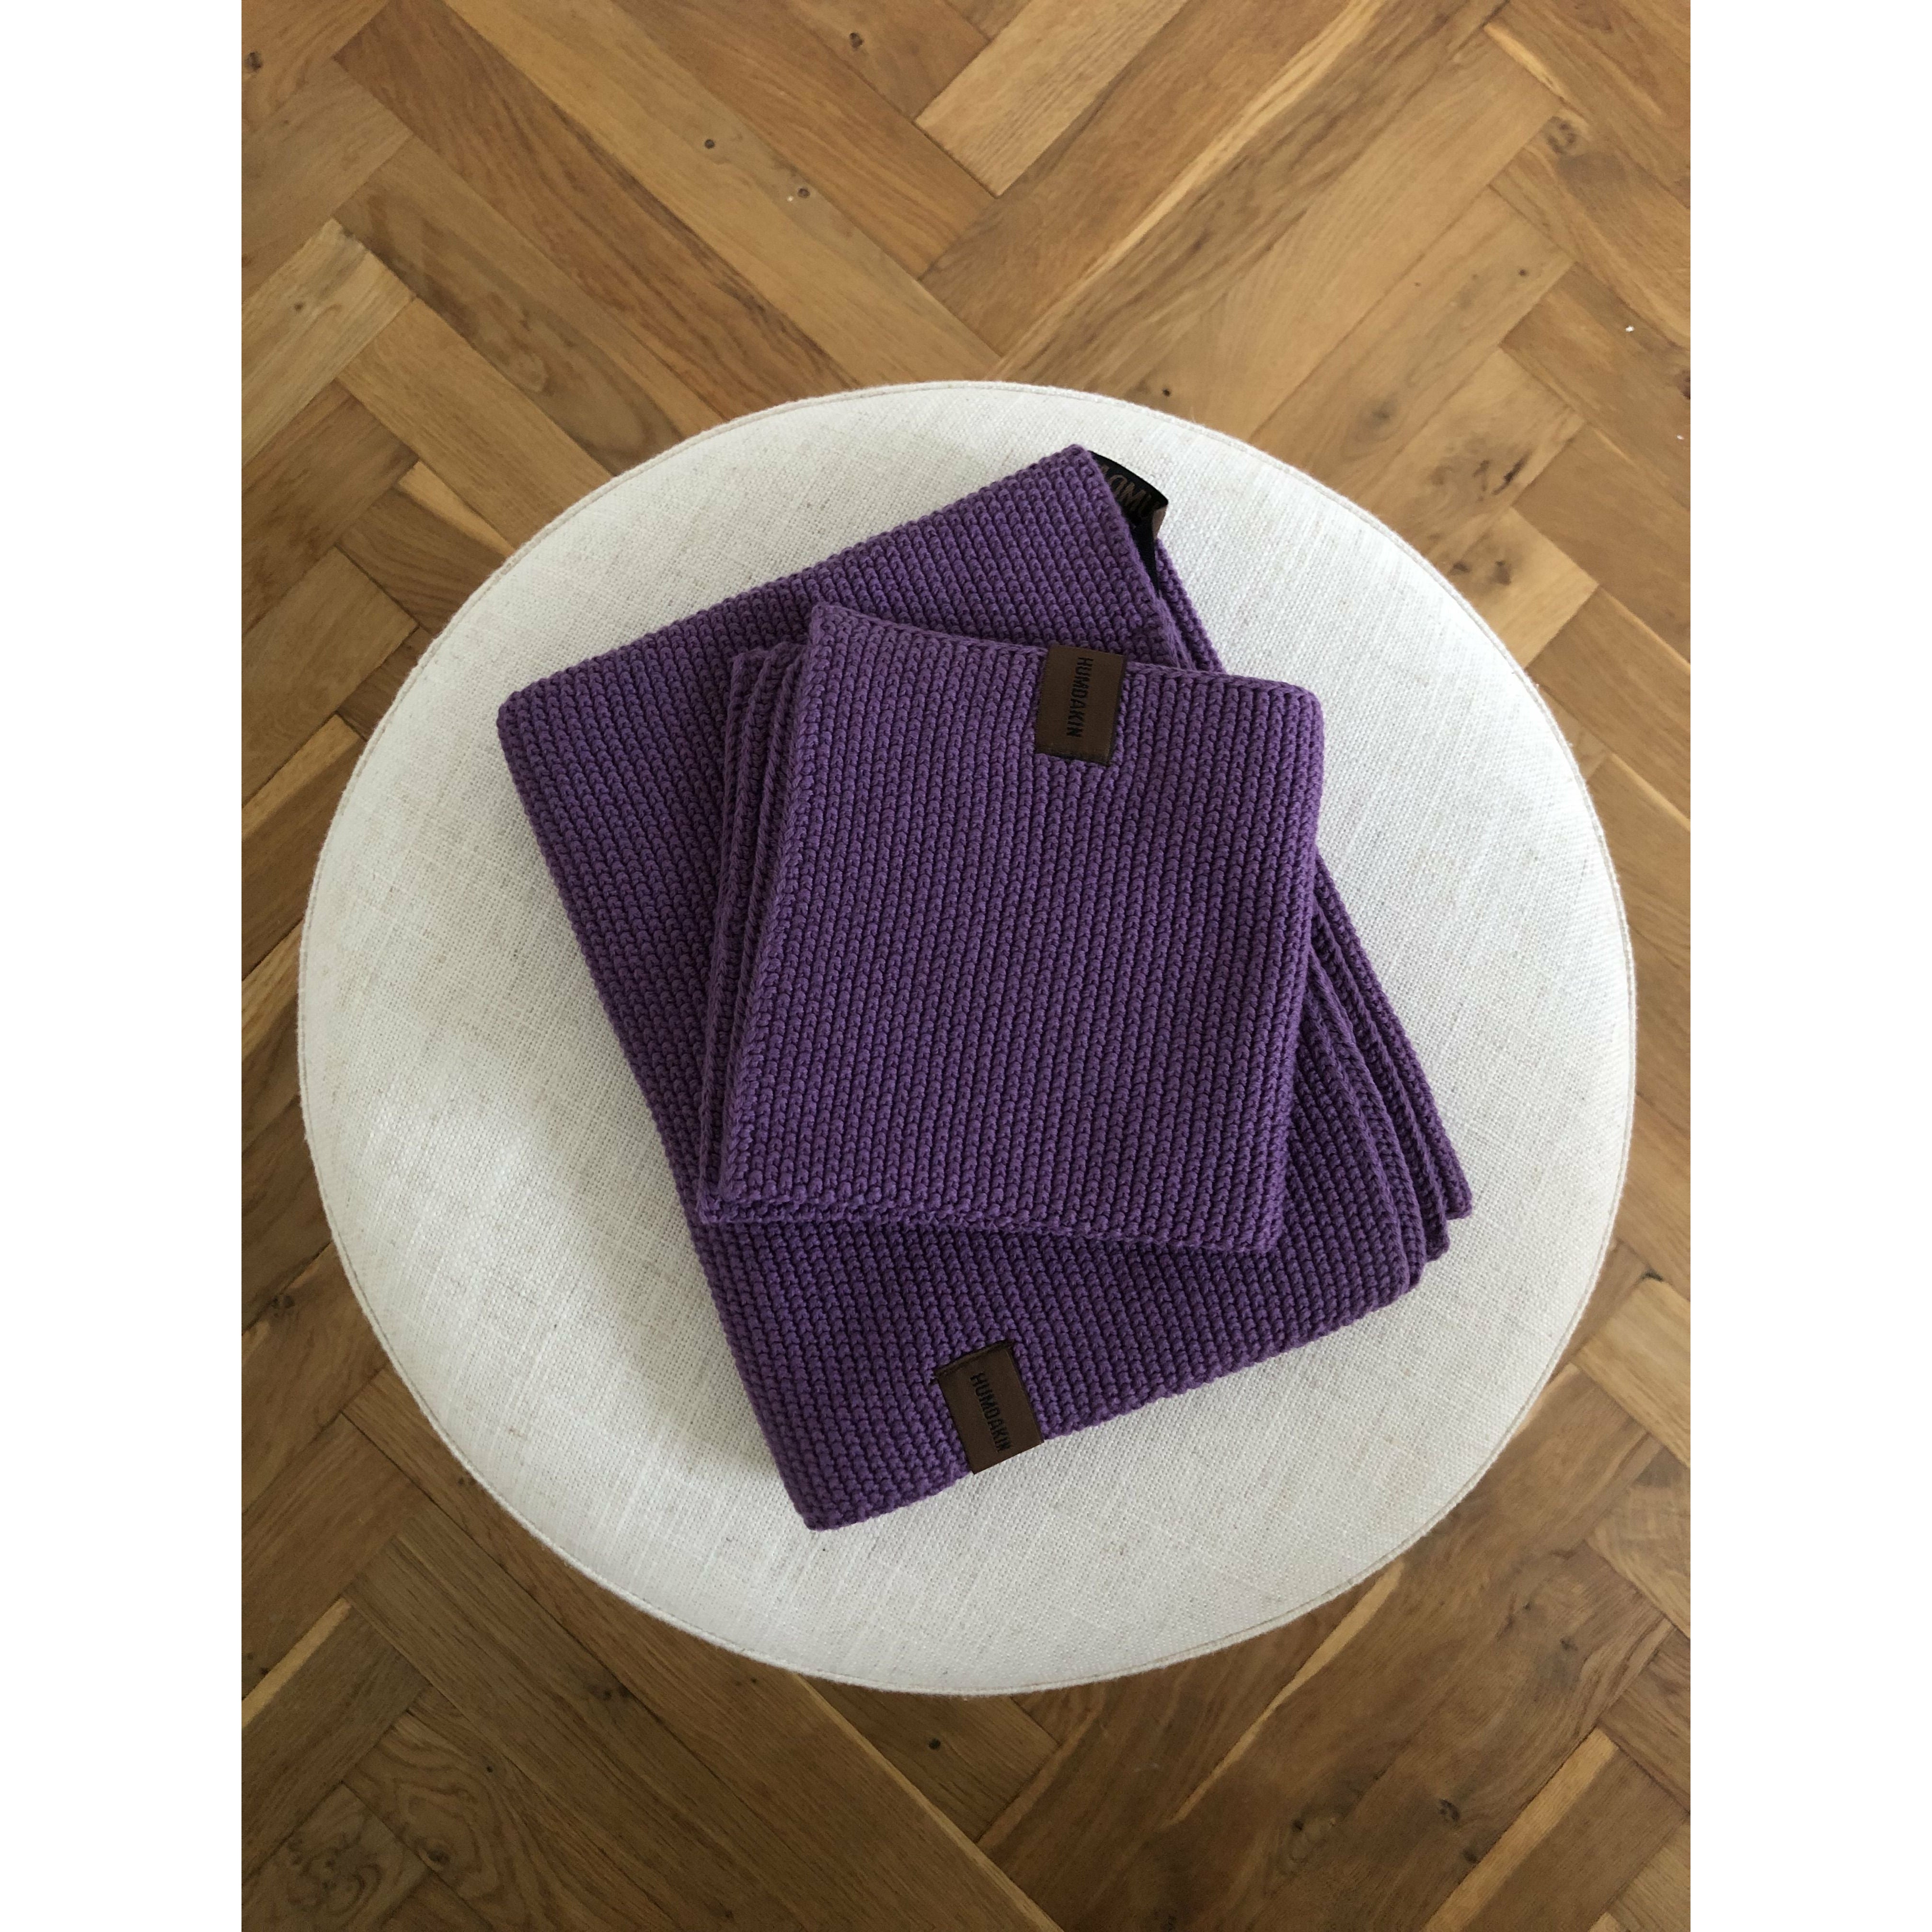 Humdakin pletený ručník, fialový ručník